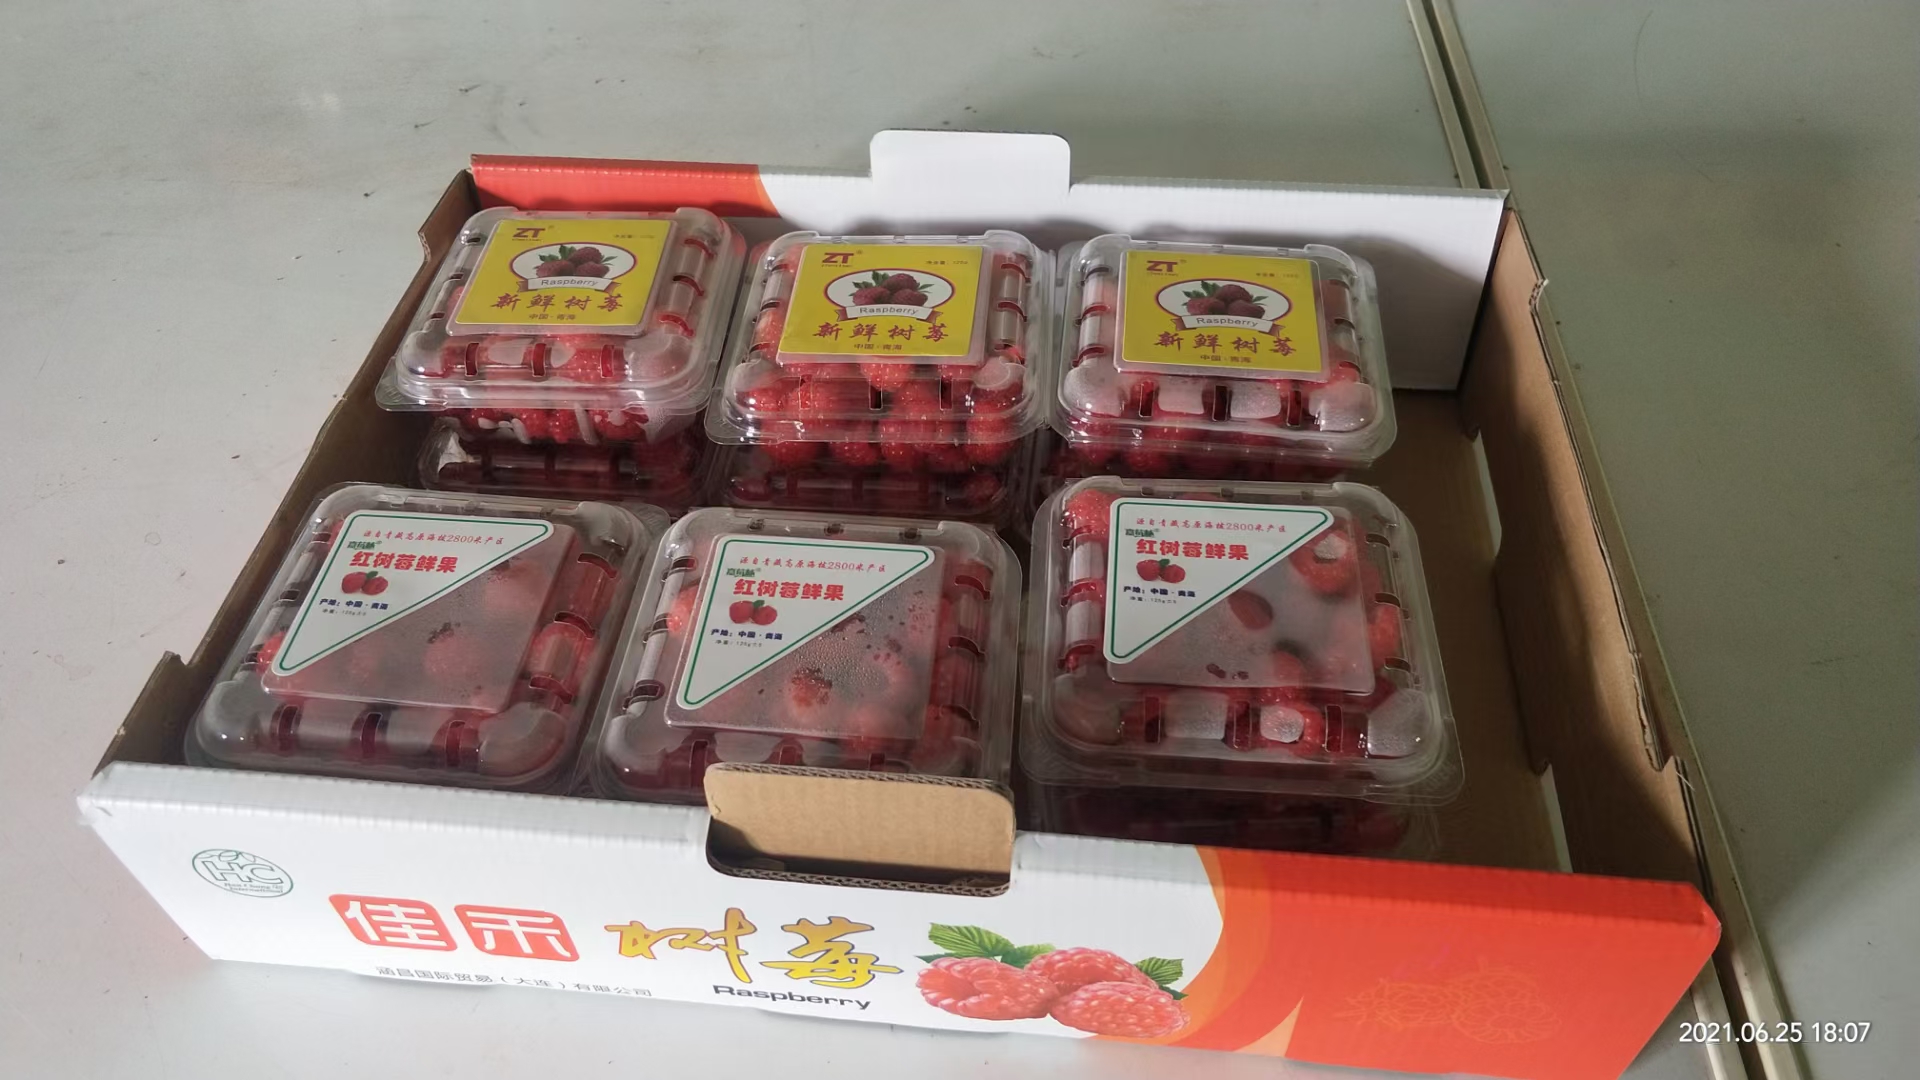 循化撒拉族自治县树莓鲜果(青海产区20年龙头企业种植产品)